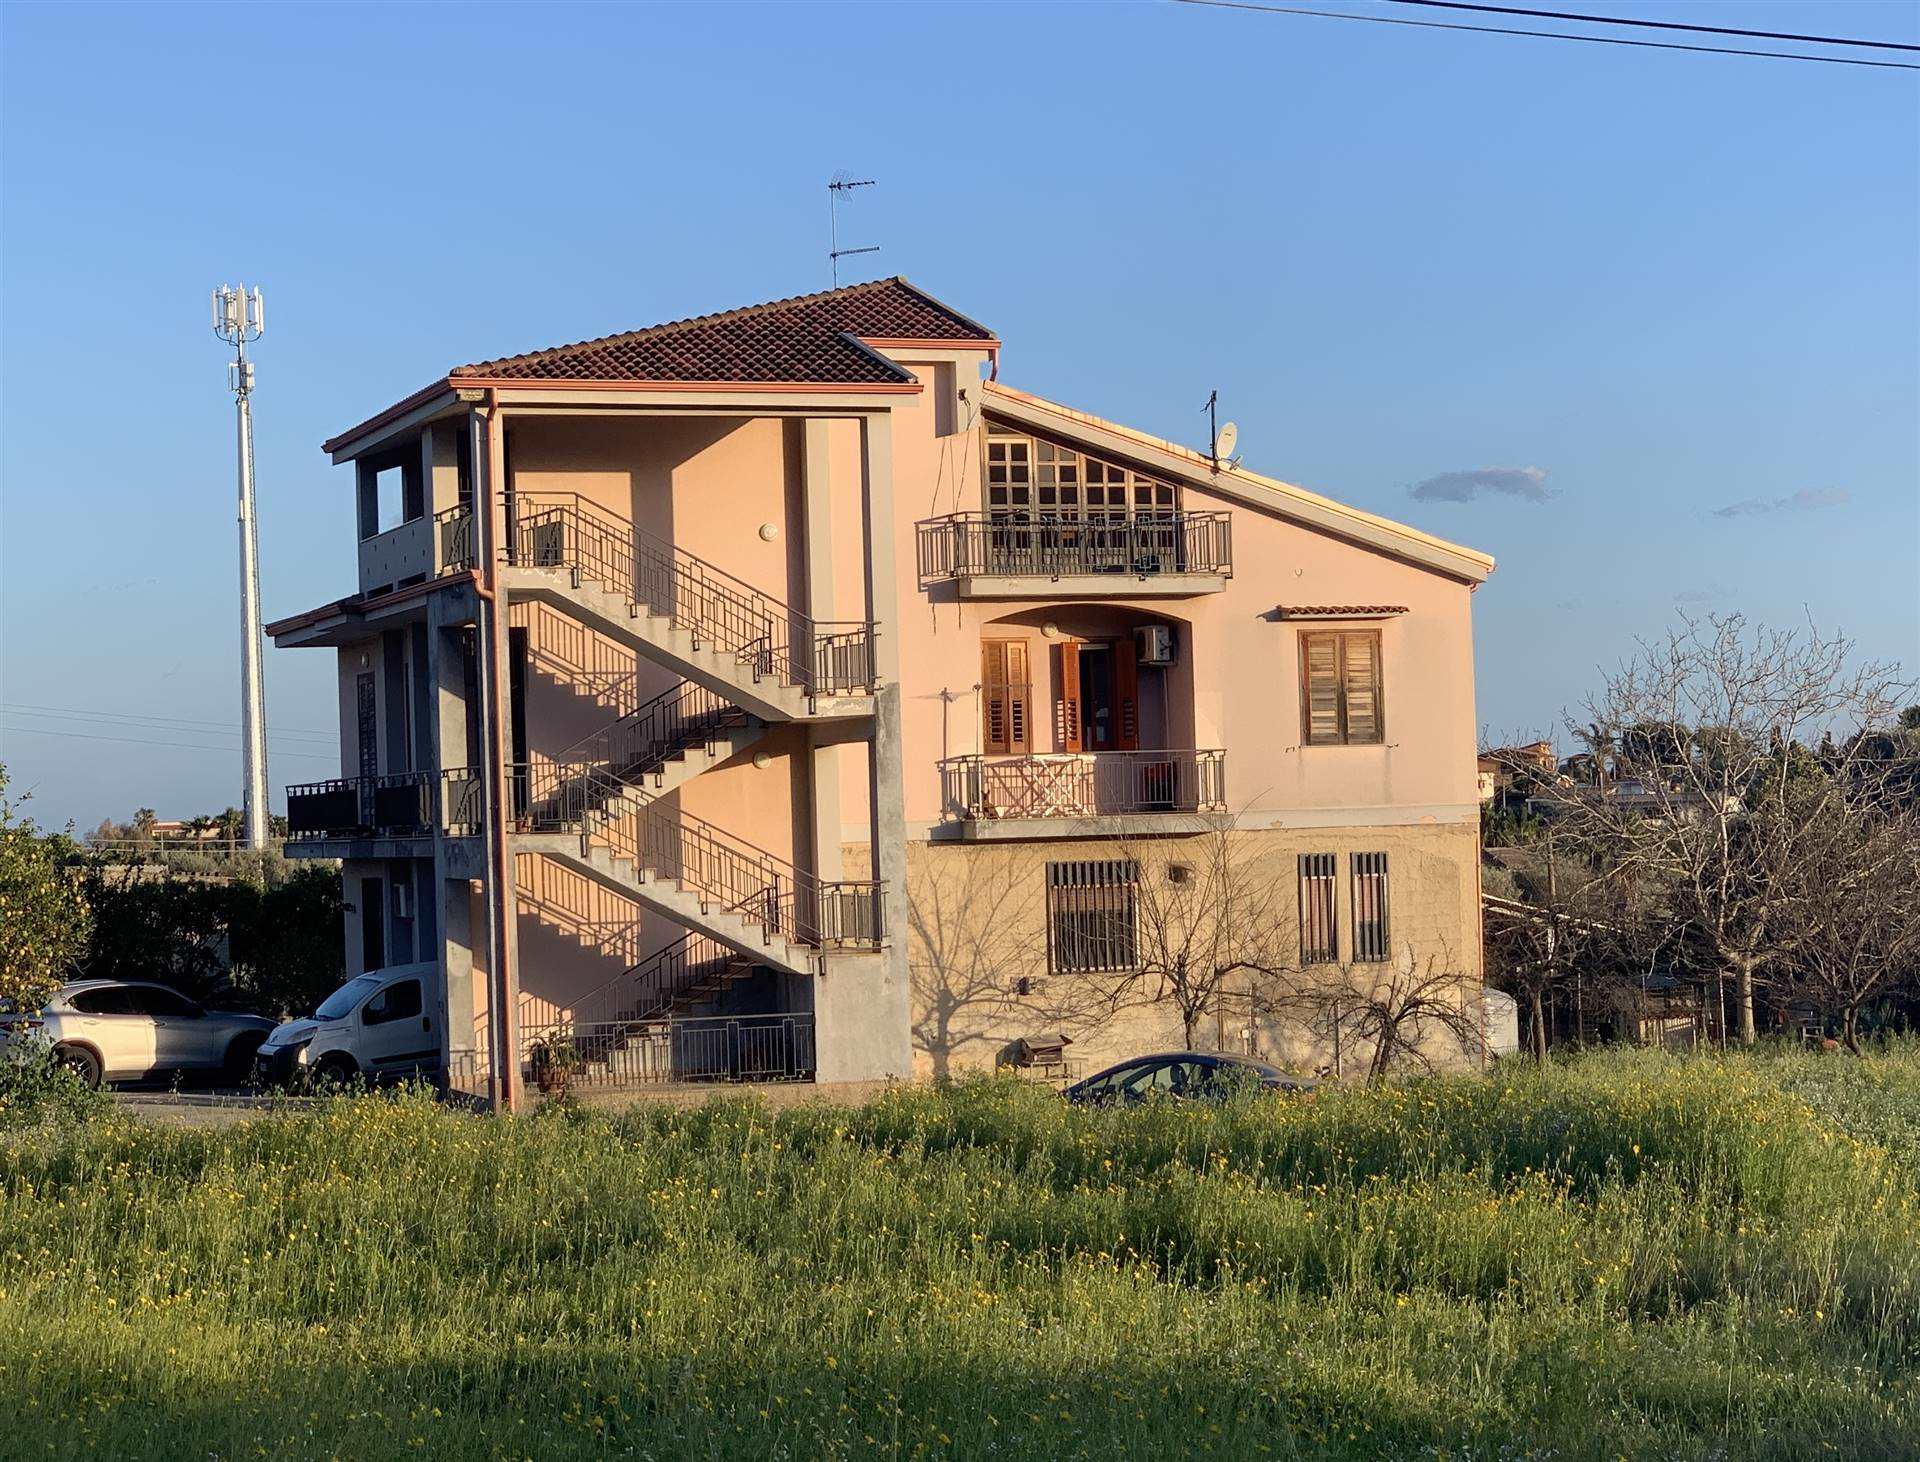 Soluzione Indipendente in vendita a Avola, 12 locali, zona Località: EXTRAURBANO, prezzo € 550.000 | CambioCasa.it